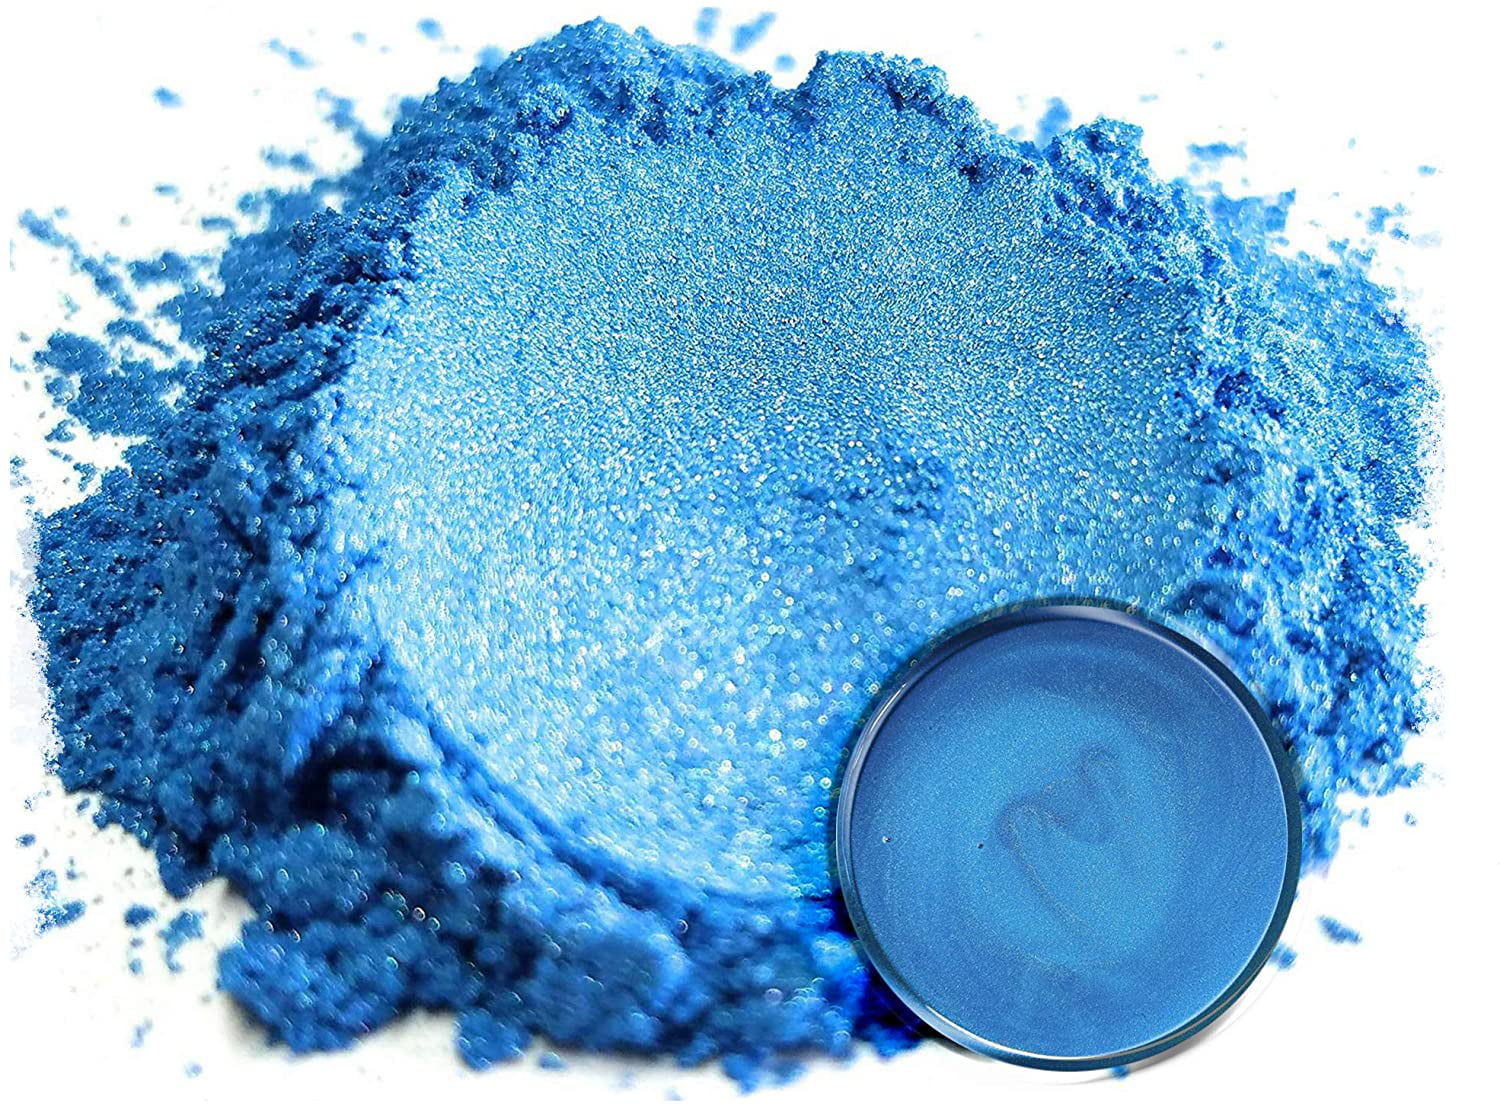 Mica Powder Pigment “Busan Blue” (25g) Multipurpose DIY Arts and